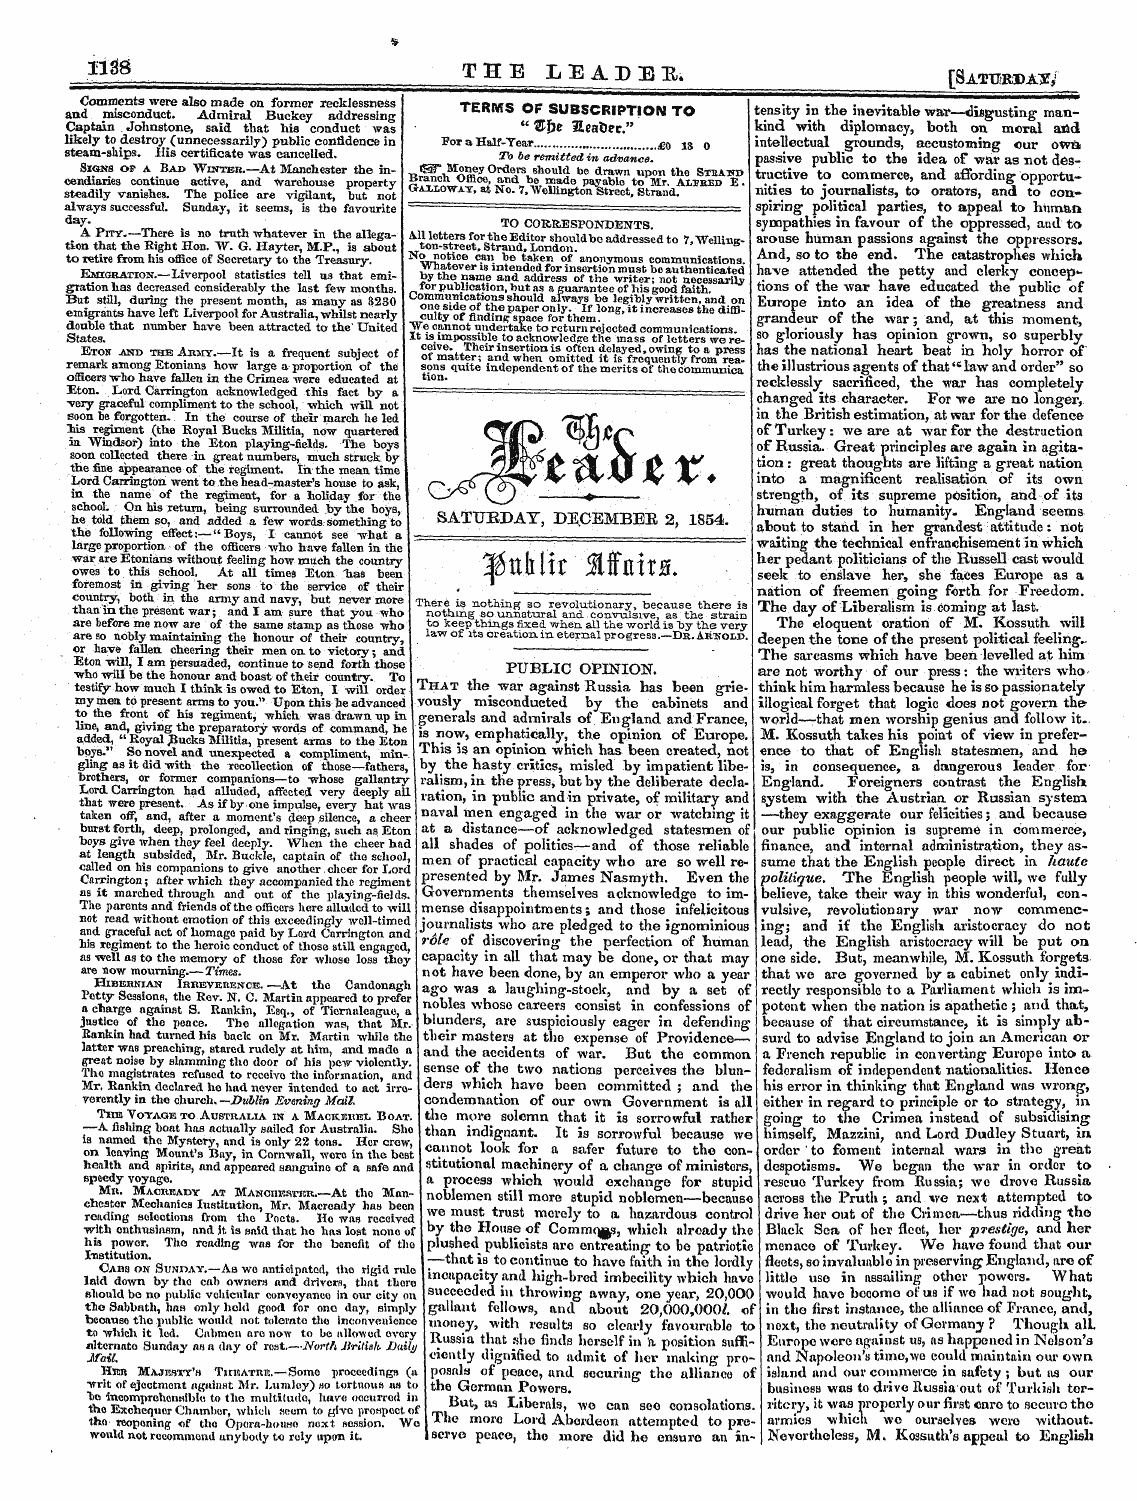 Leader (1850-1860): jS F Y, Country edition - La- ¦ . ... Saturday, Decembee 2, 1854.